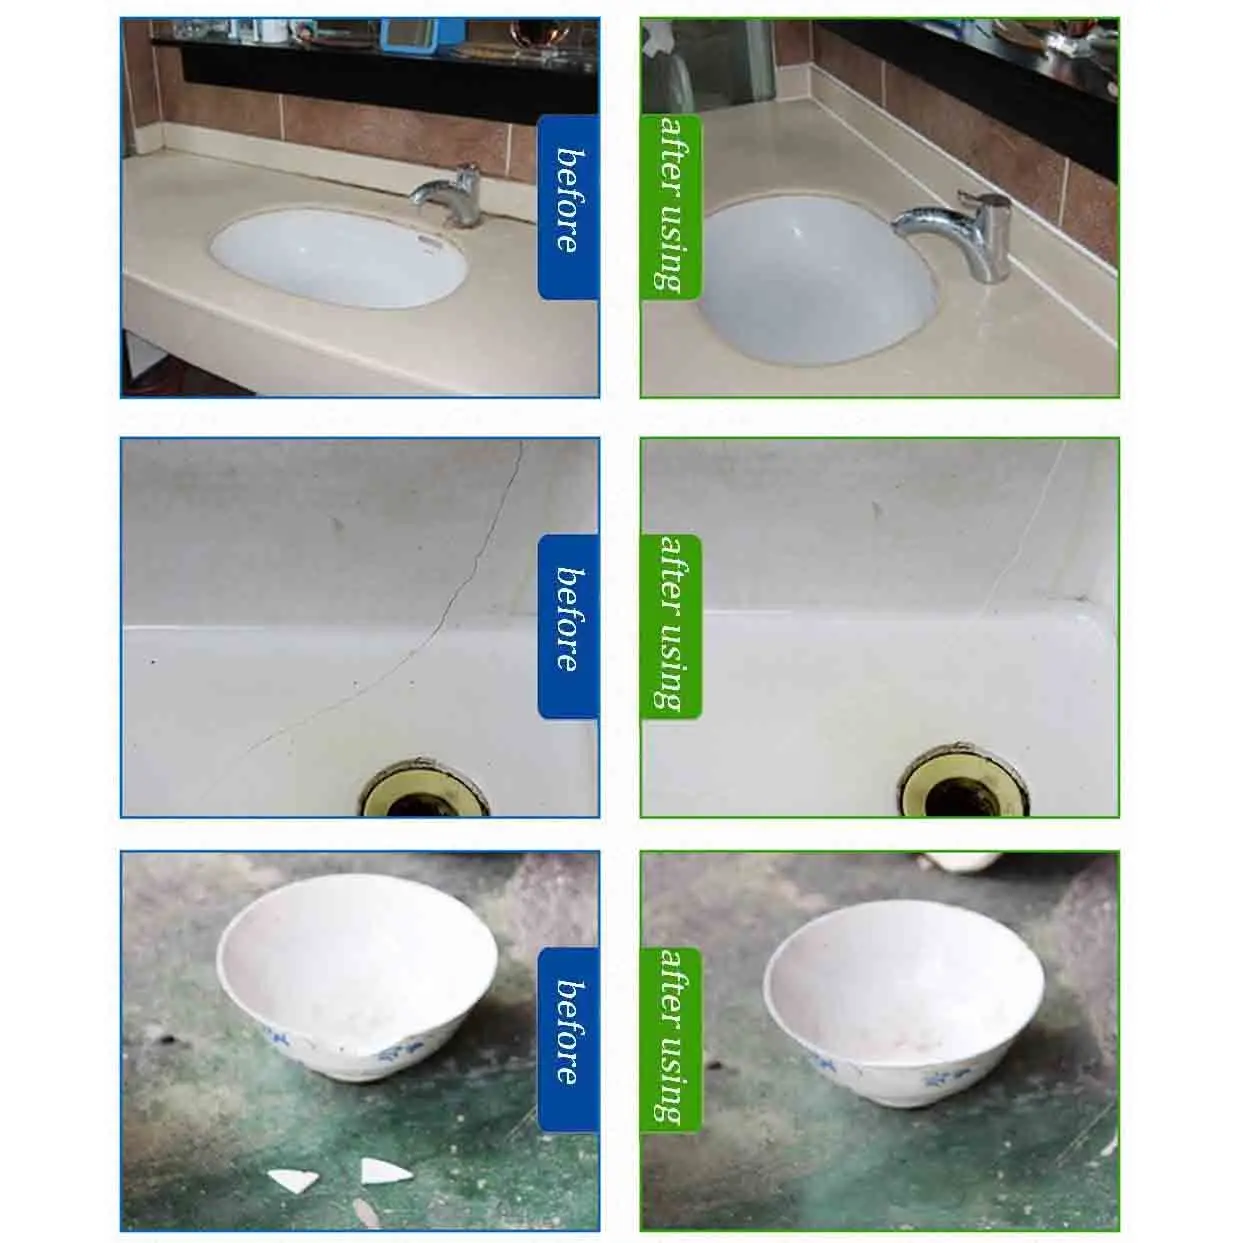 Ab Tile Repair Agent Paste Floor Toilet Bathroom Sink Tile Repair For  Fiberglass Porcelain Ceramic Fix Shower Repair Kit Repair - Caulk -  AliExpress